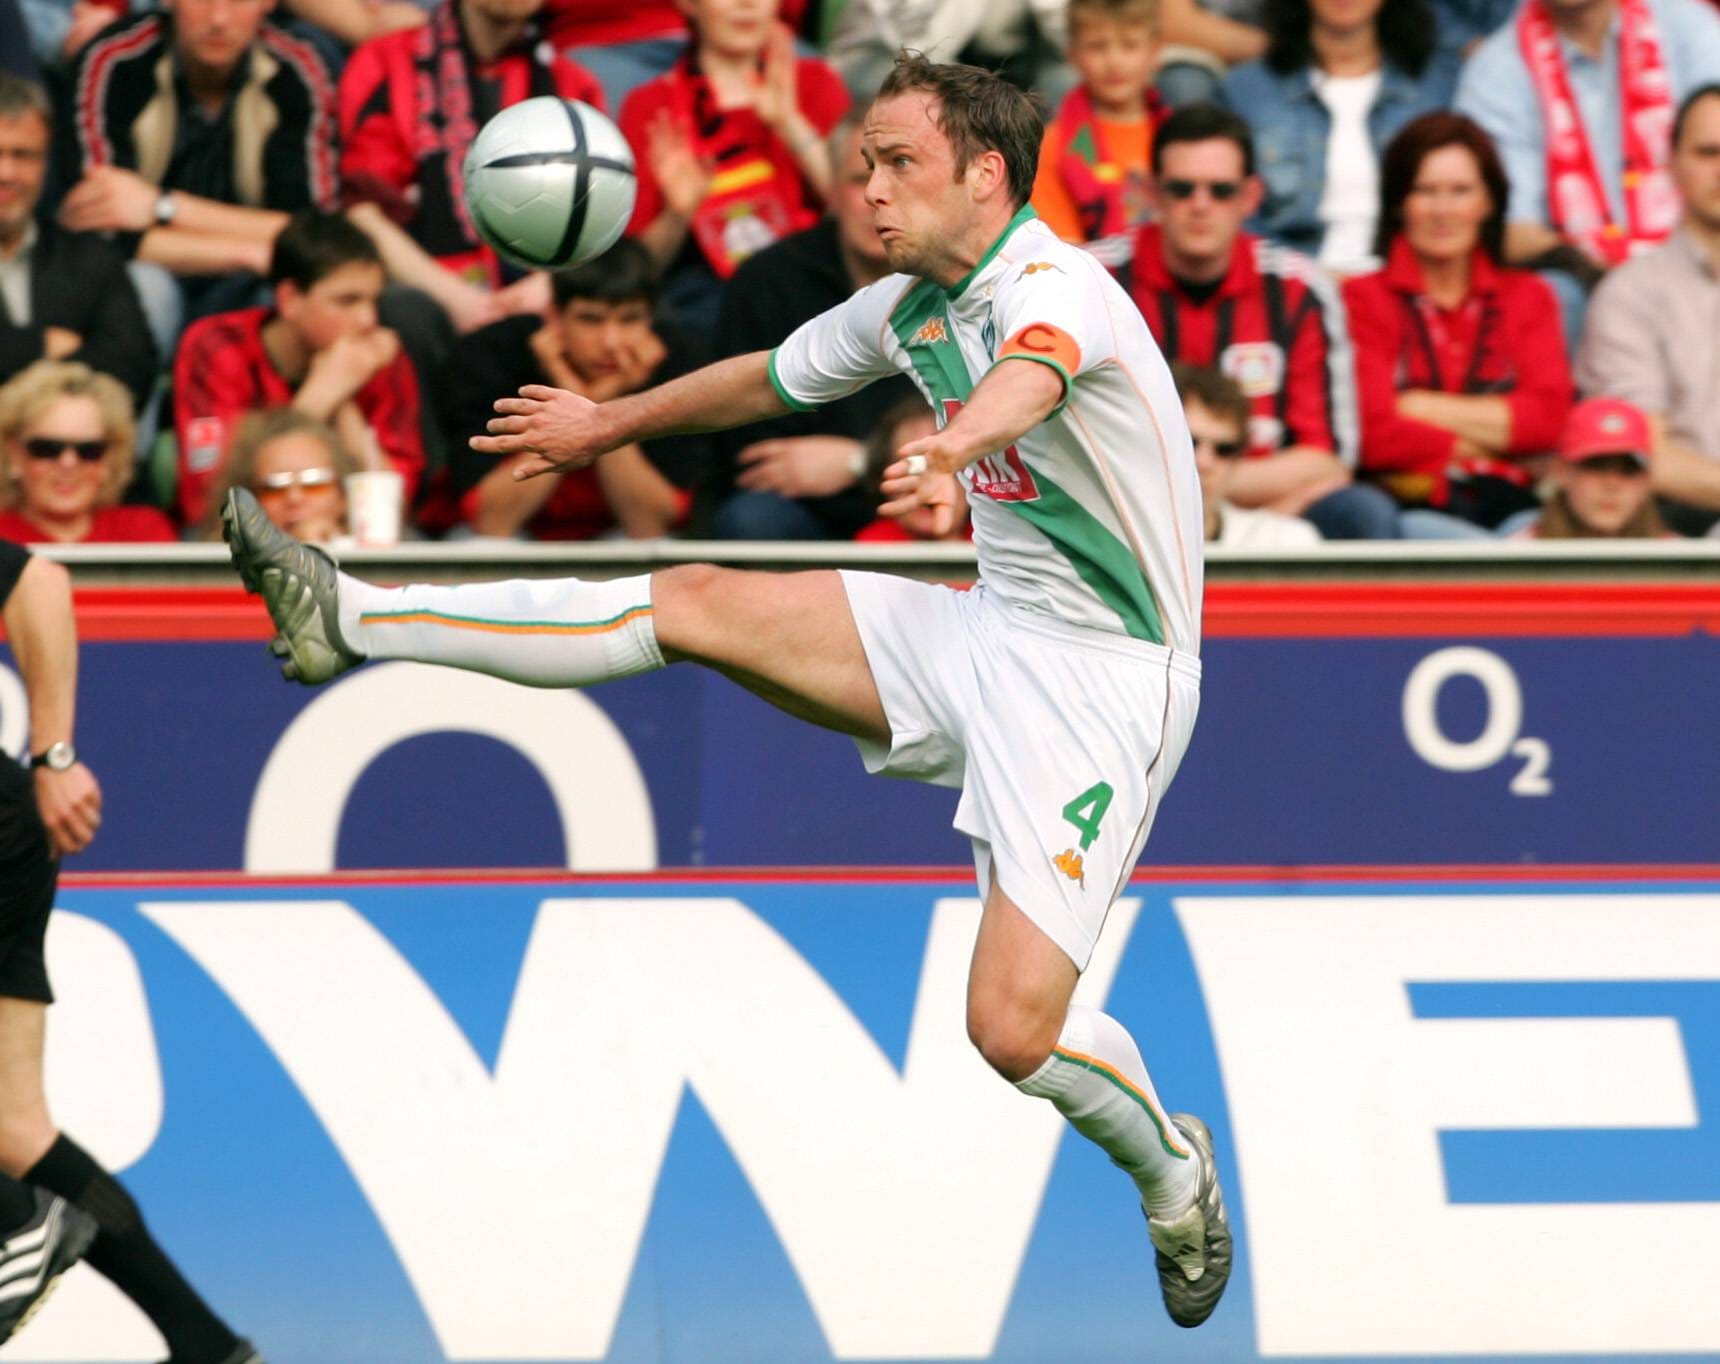 Fabian Ernst (2000 - 2005): Der Ex-Nationalspieler (24 Länderspiele) spielte nach seiner Zeit bei Werder Bremen noch vier Jahre auf Schalke und drei Jahre in der Türkei. Außerdem ging der heute ehemalige Mittelfeldspieler kürzlich unter die Klub-Besitzer. Mit einem Freund kaufte er im Januar 2019 den dänischen Zweitligisten Naestved BK, gab ihn aber Ende 2020 wieder ab.